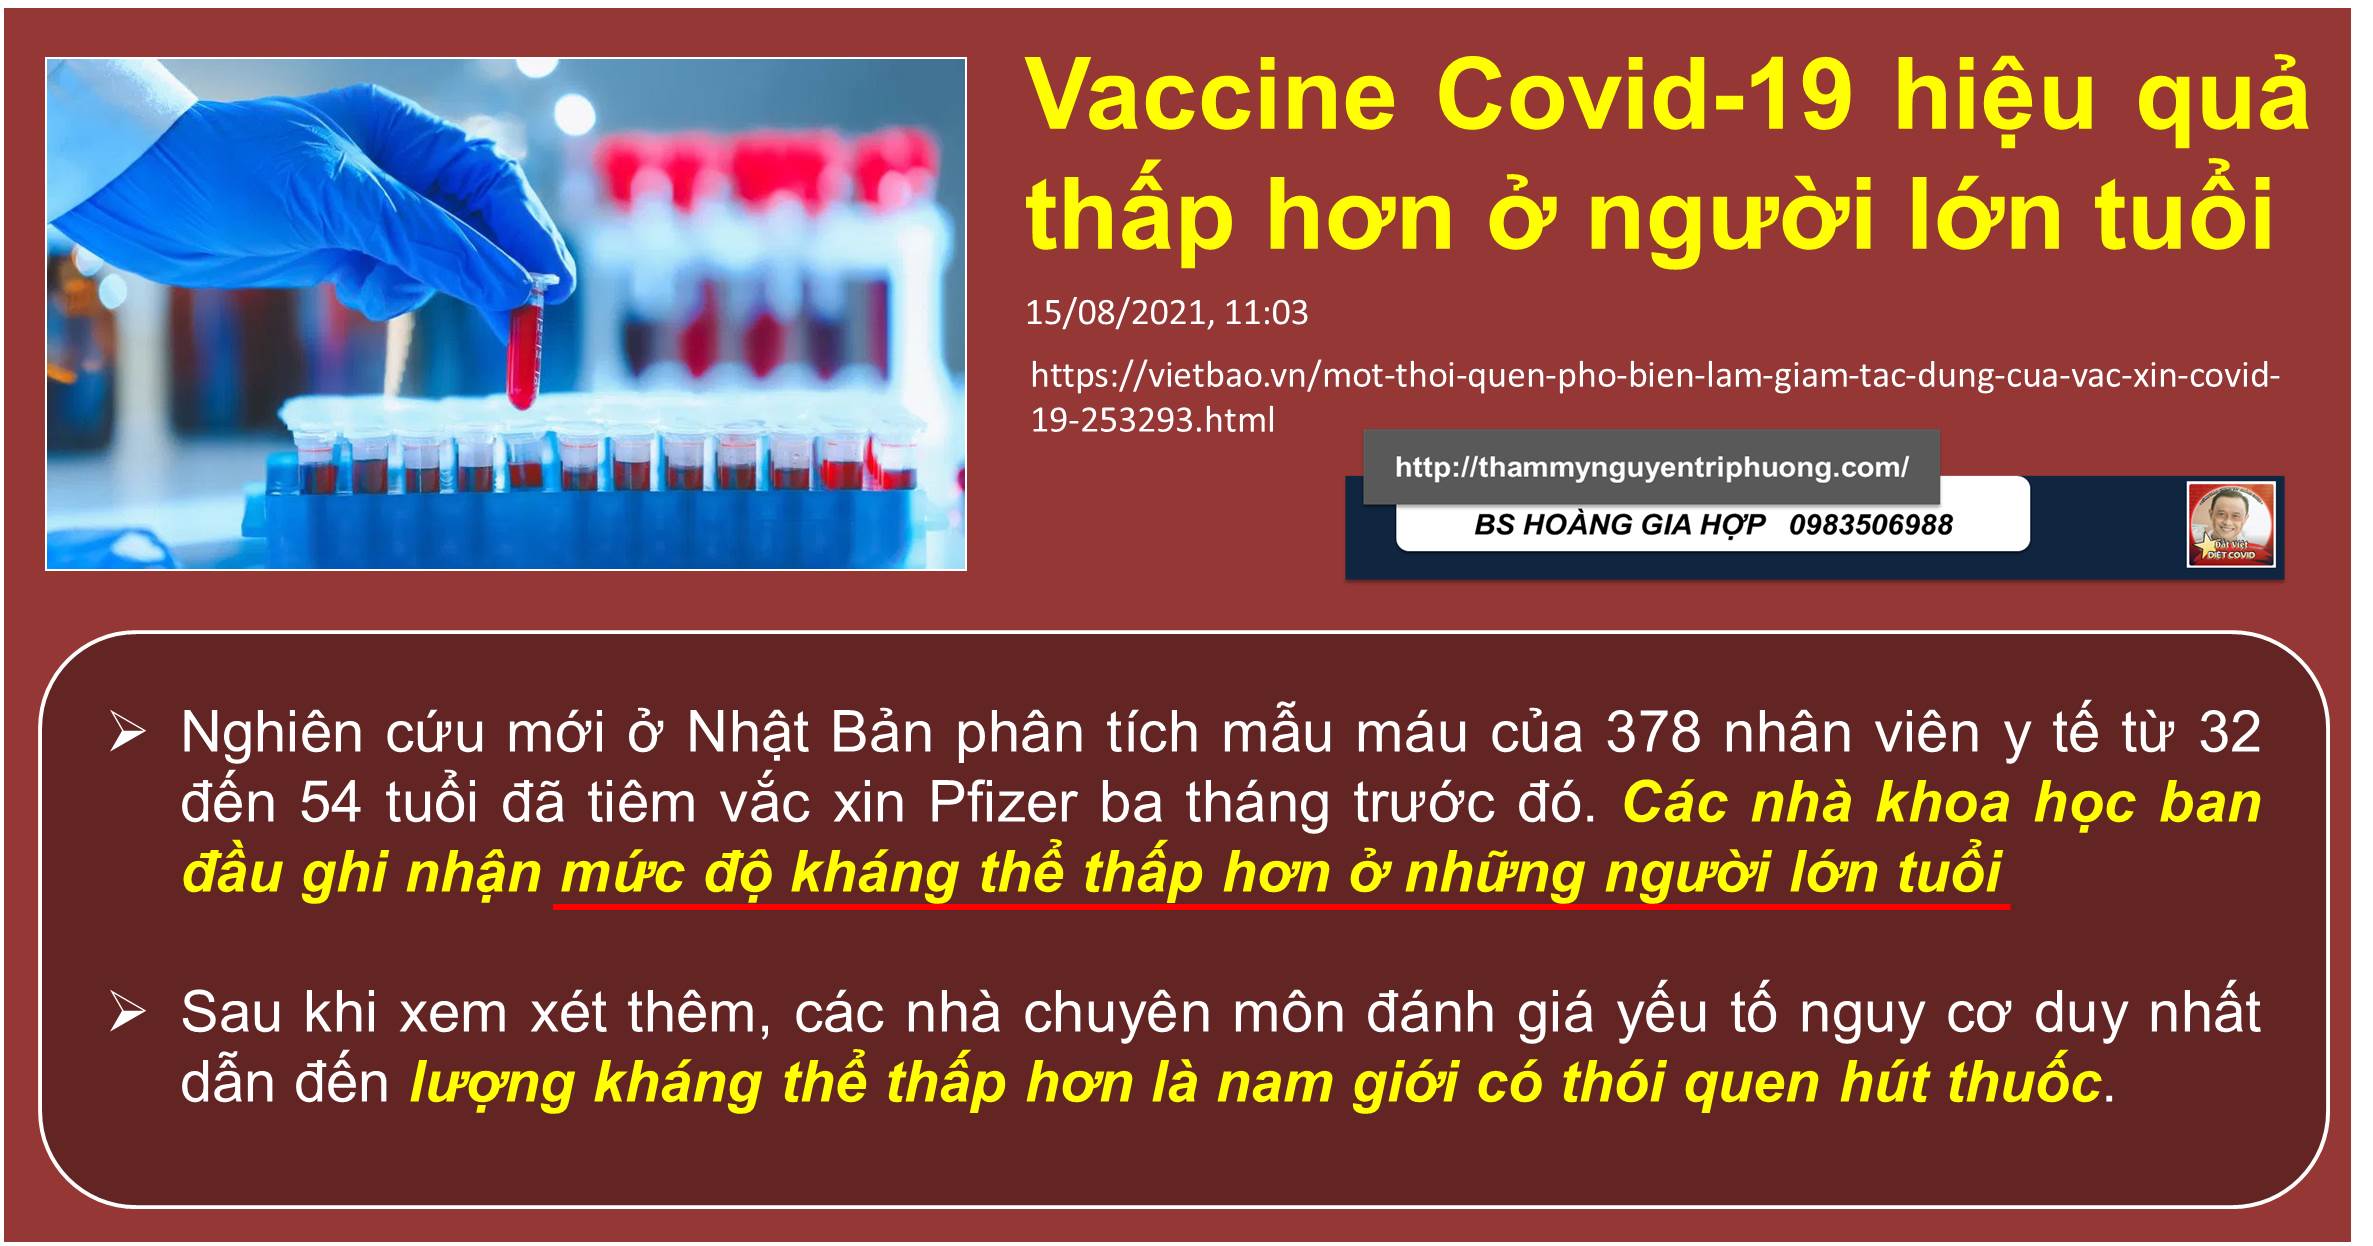 Hiệu quả Vaccine Covid-19 ở người lớn tuổi thấp hơn người trẻ tuổi